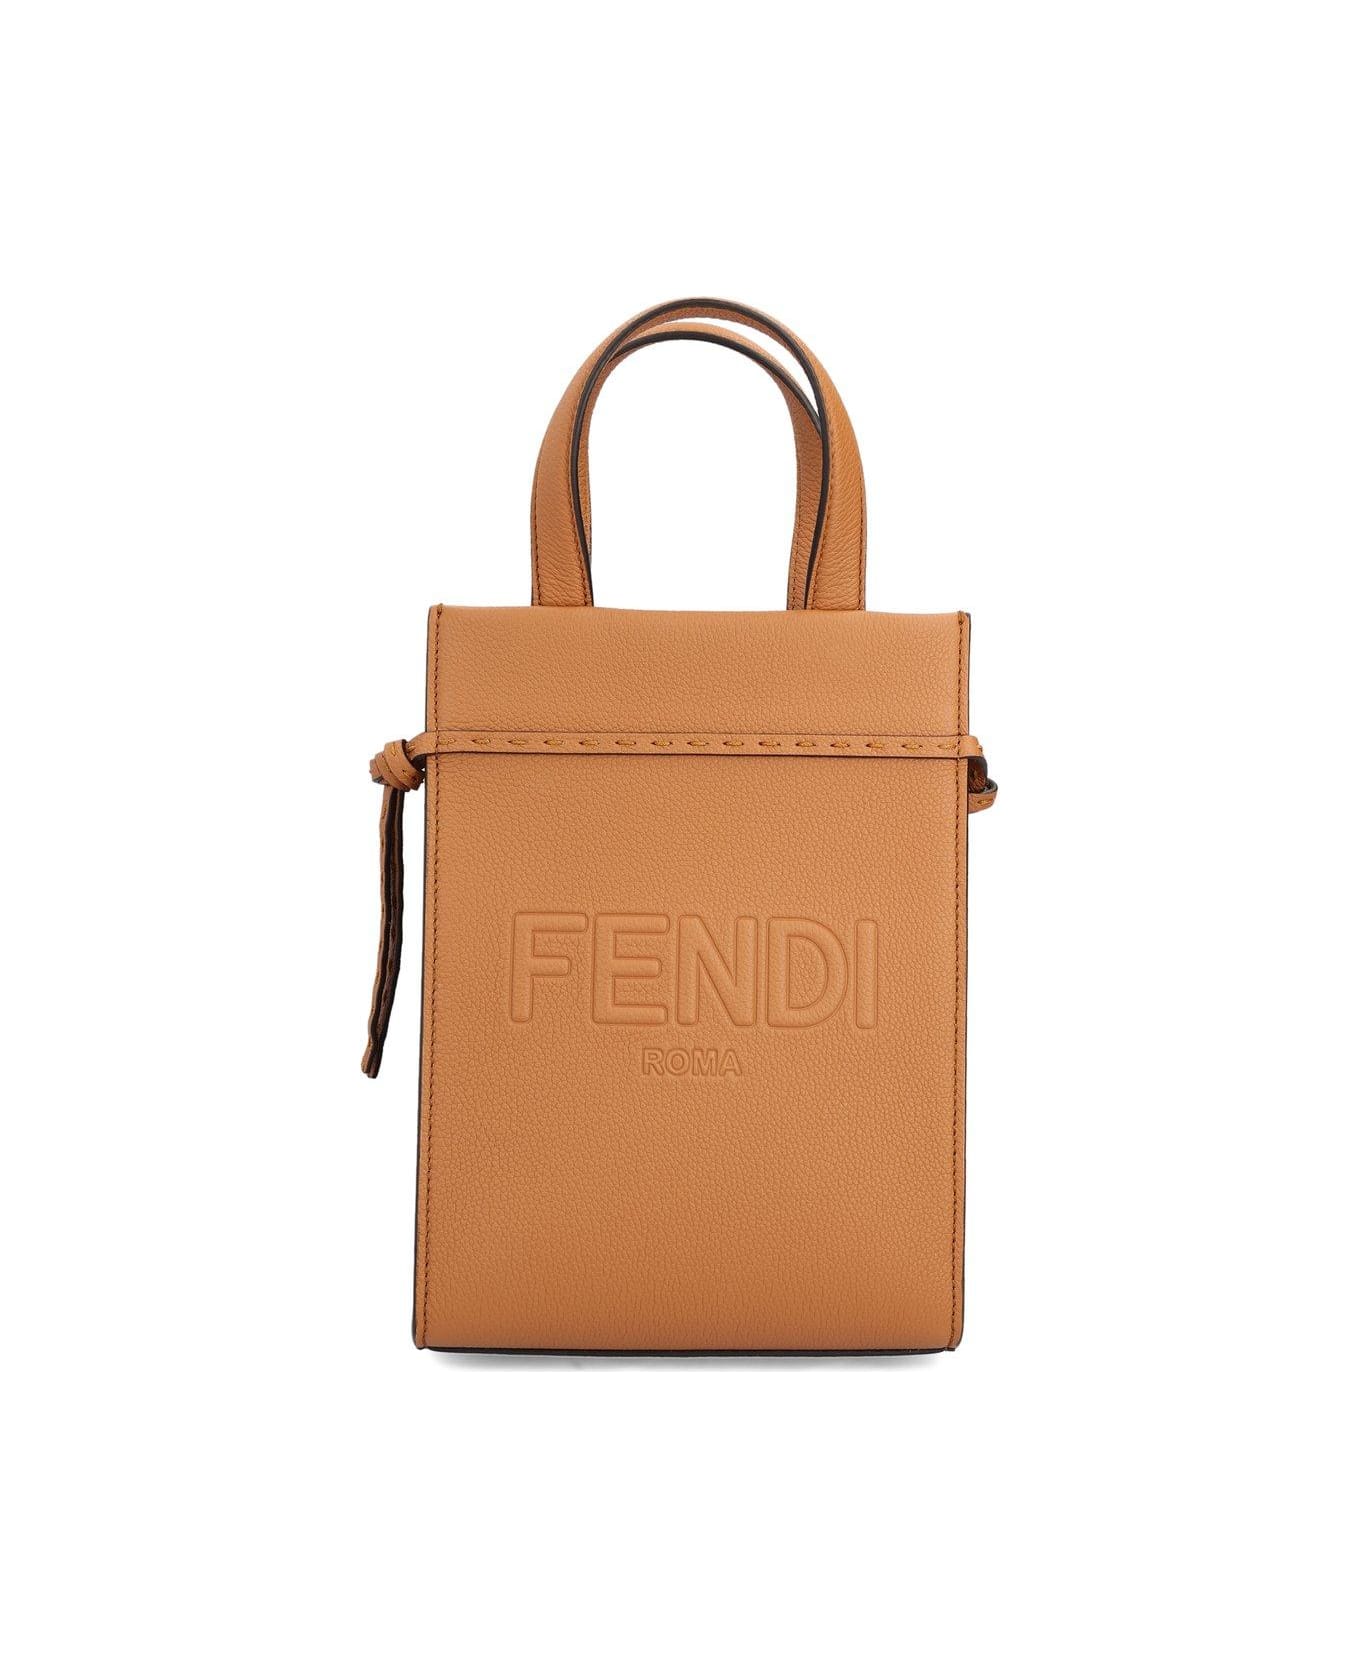 Fendi Go To Shopper Mini Bag - Marrone トートバッグ